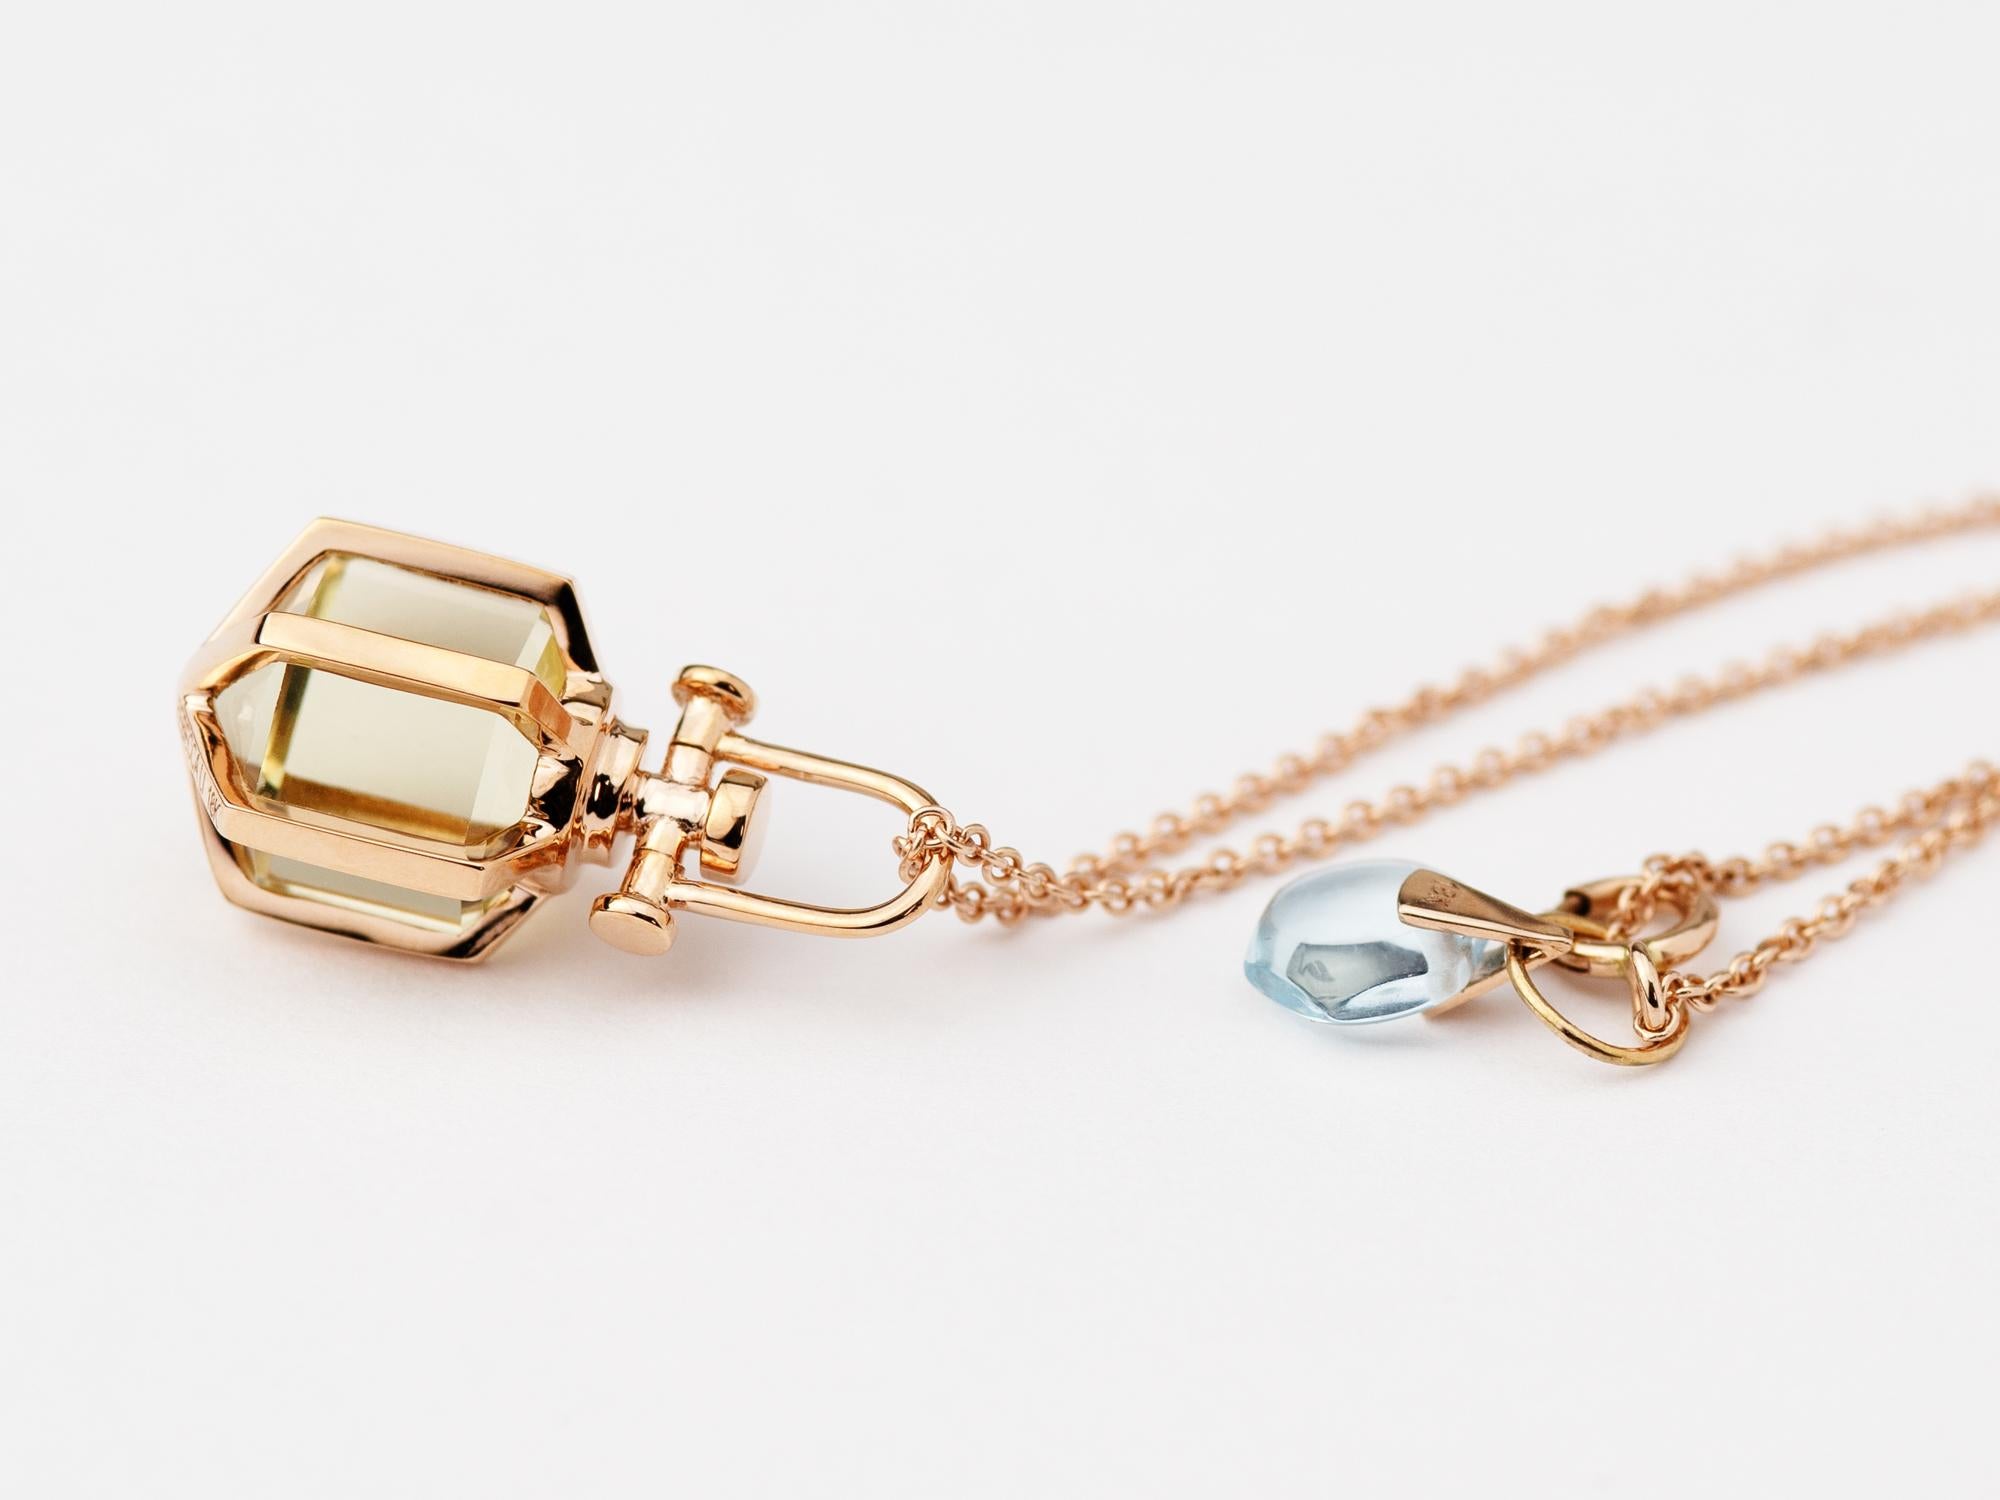 Modern Sacred 18k Solid Rose Gold Talisman Pendant Necklace with Lemon Citrine For Sale 3